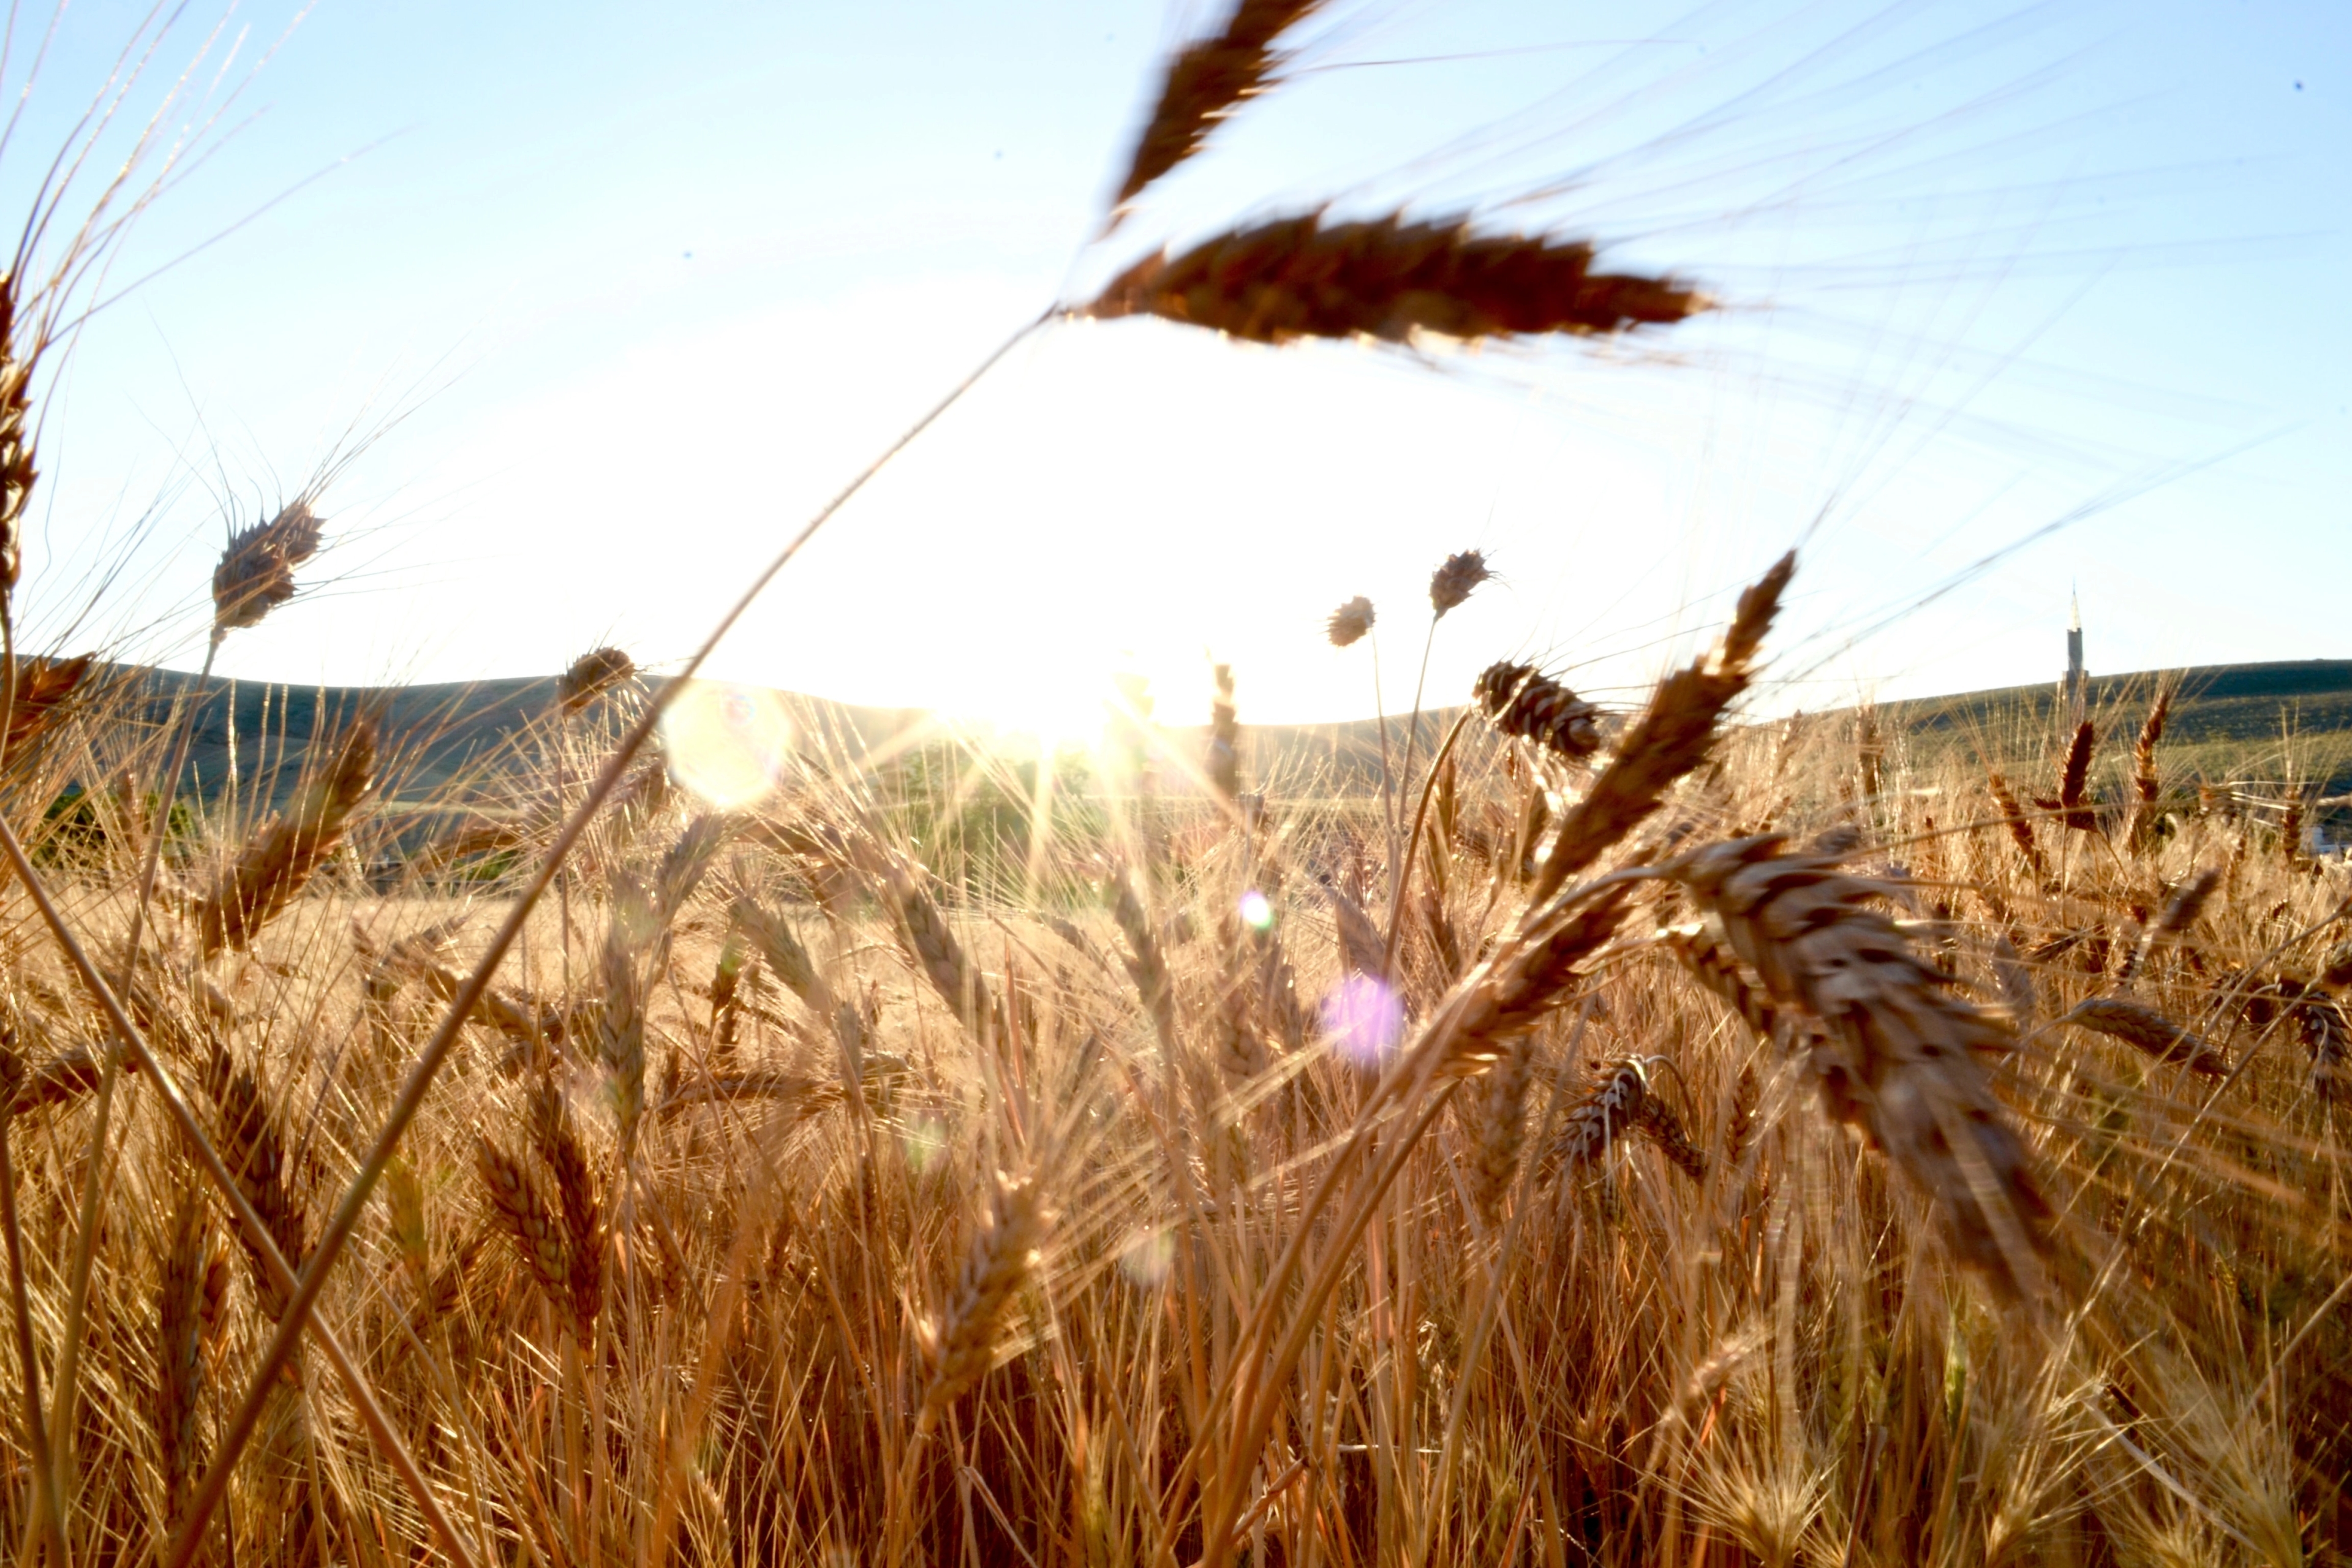 Campo de trigo marrón en un día soleado.